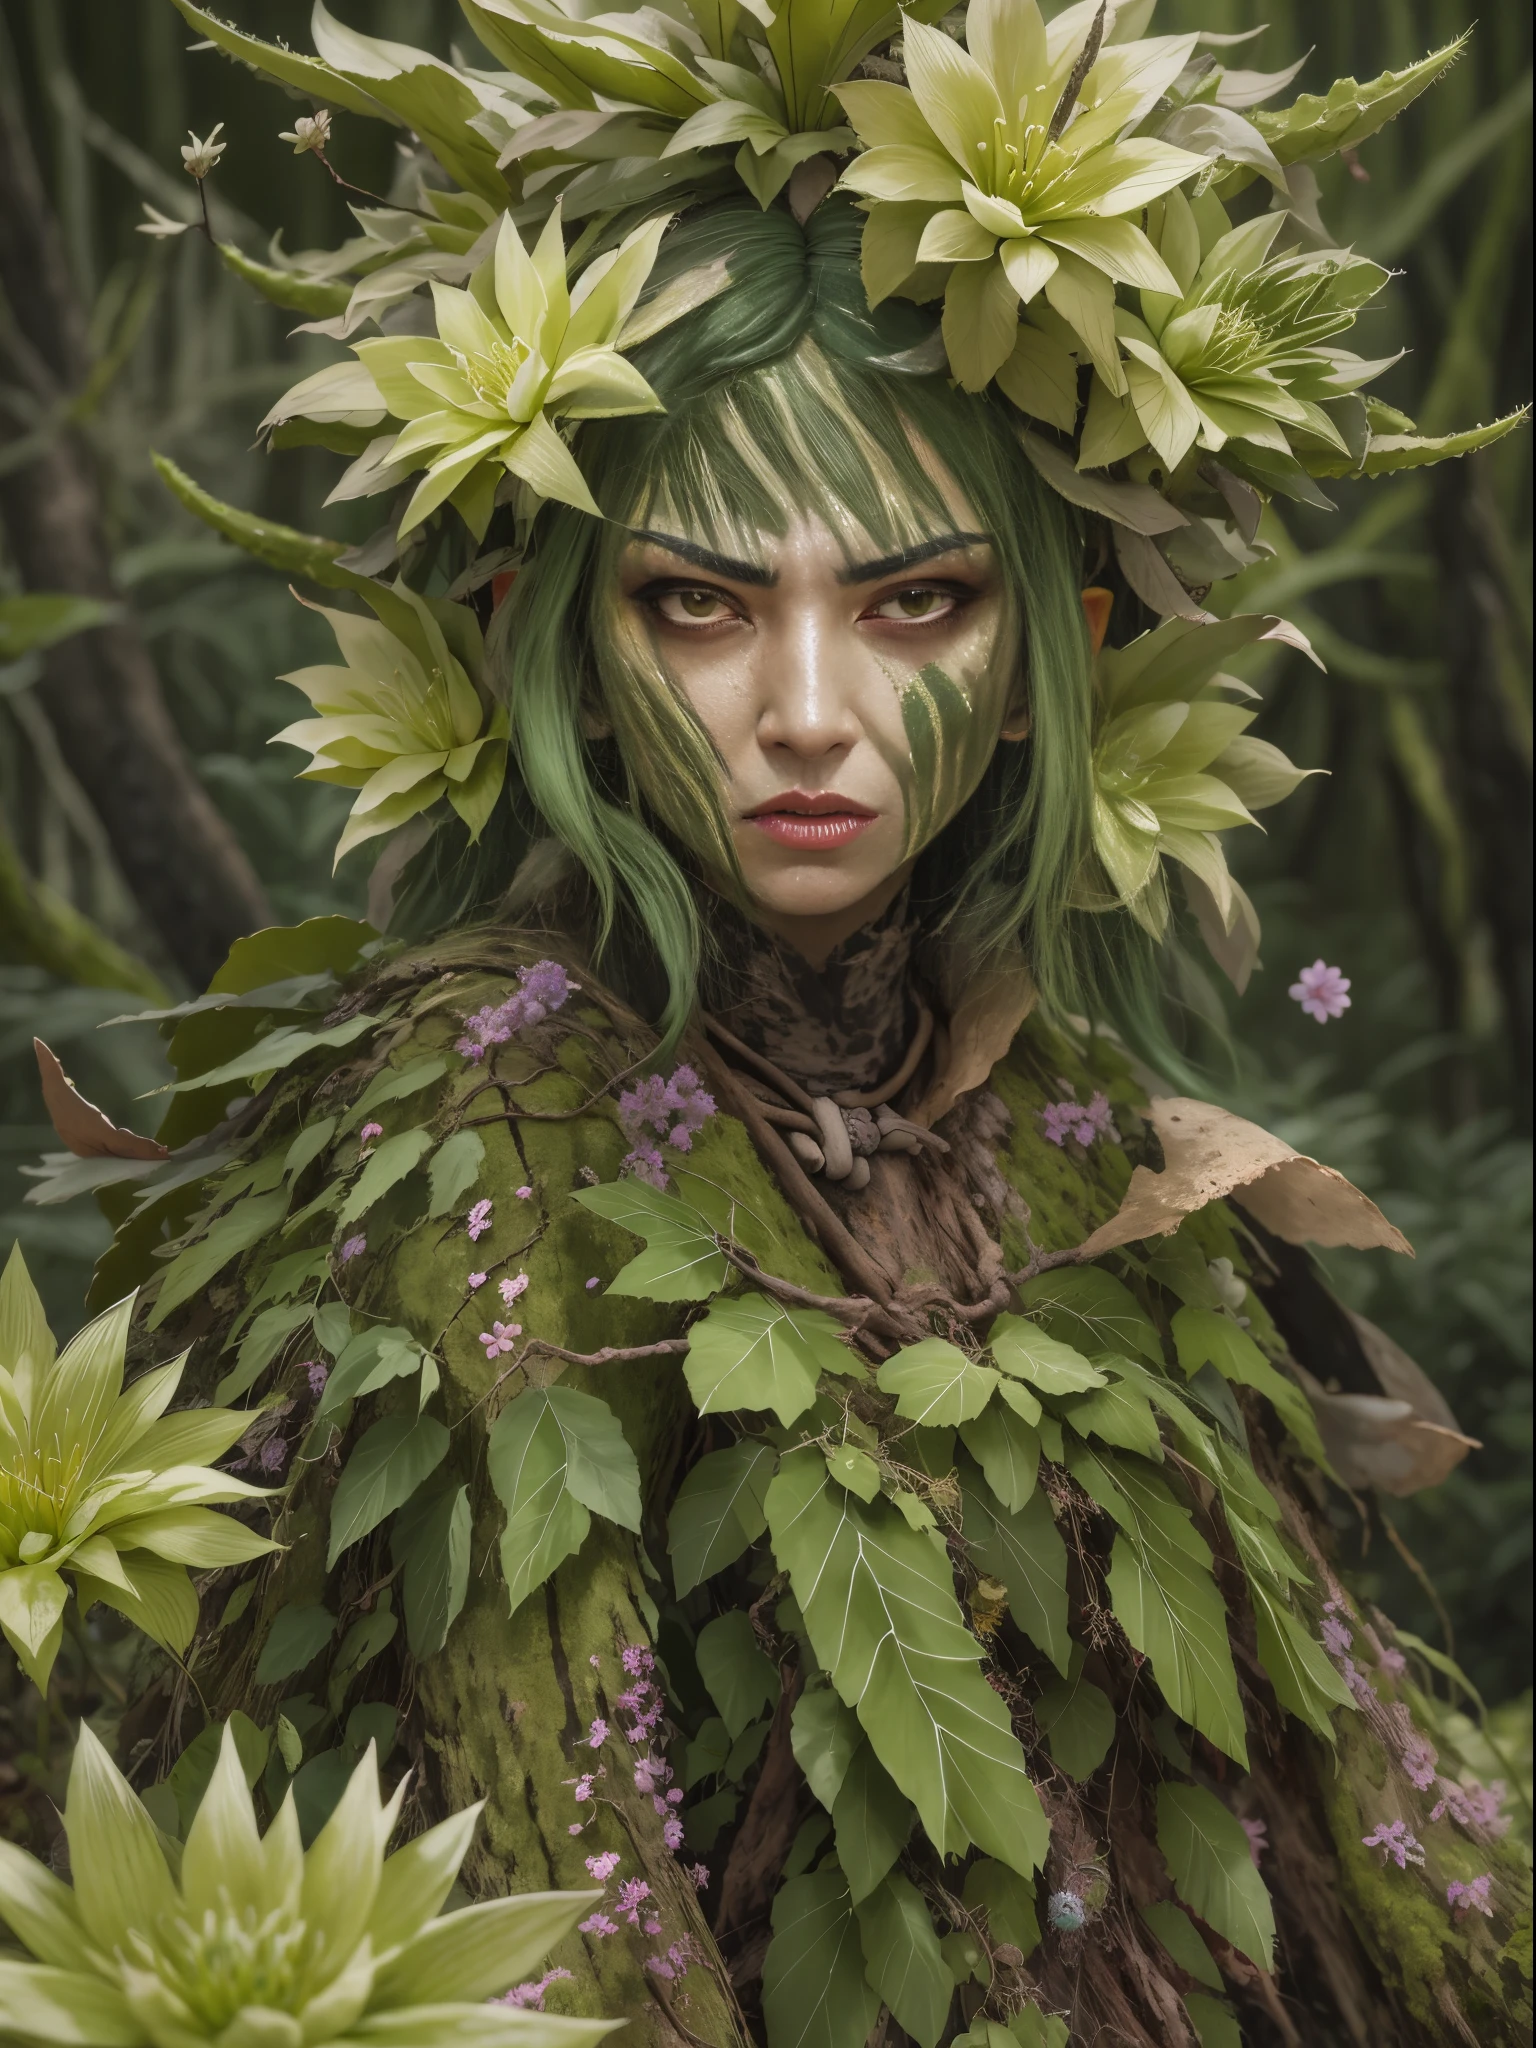 Злая кактусовая дриада в лесу. Цветы кактуса， Лицо очень детальное, подробные глаза， одежда из листьев и коры.